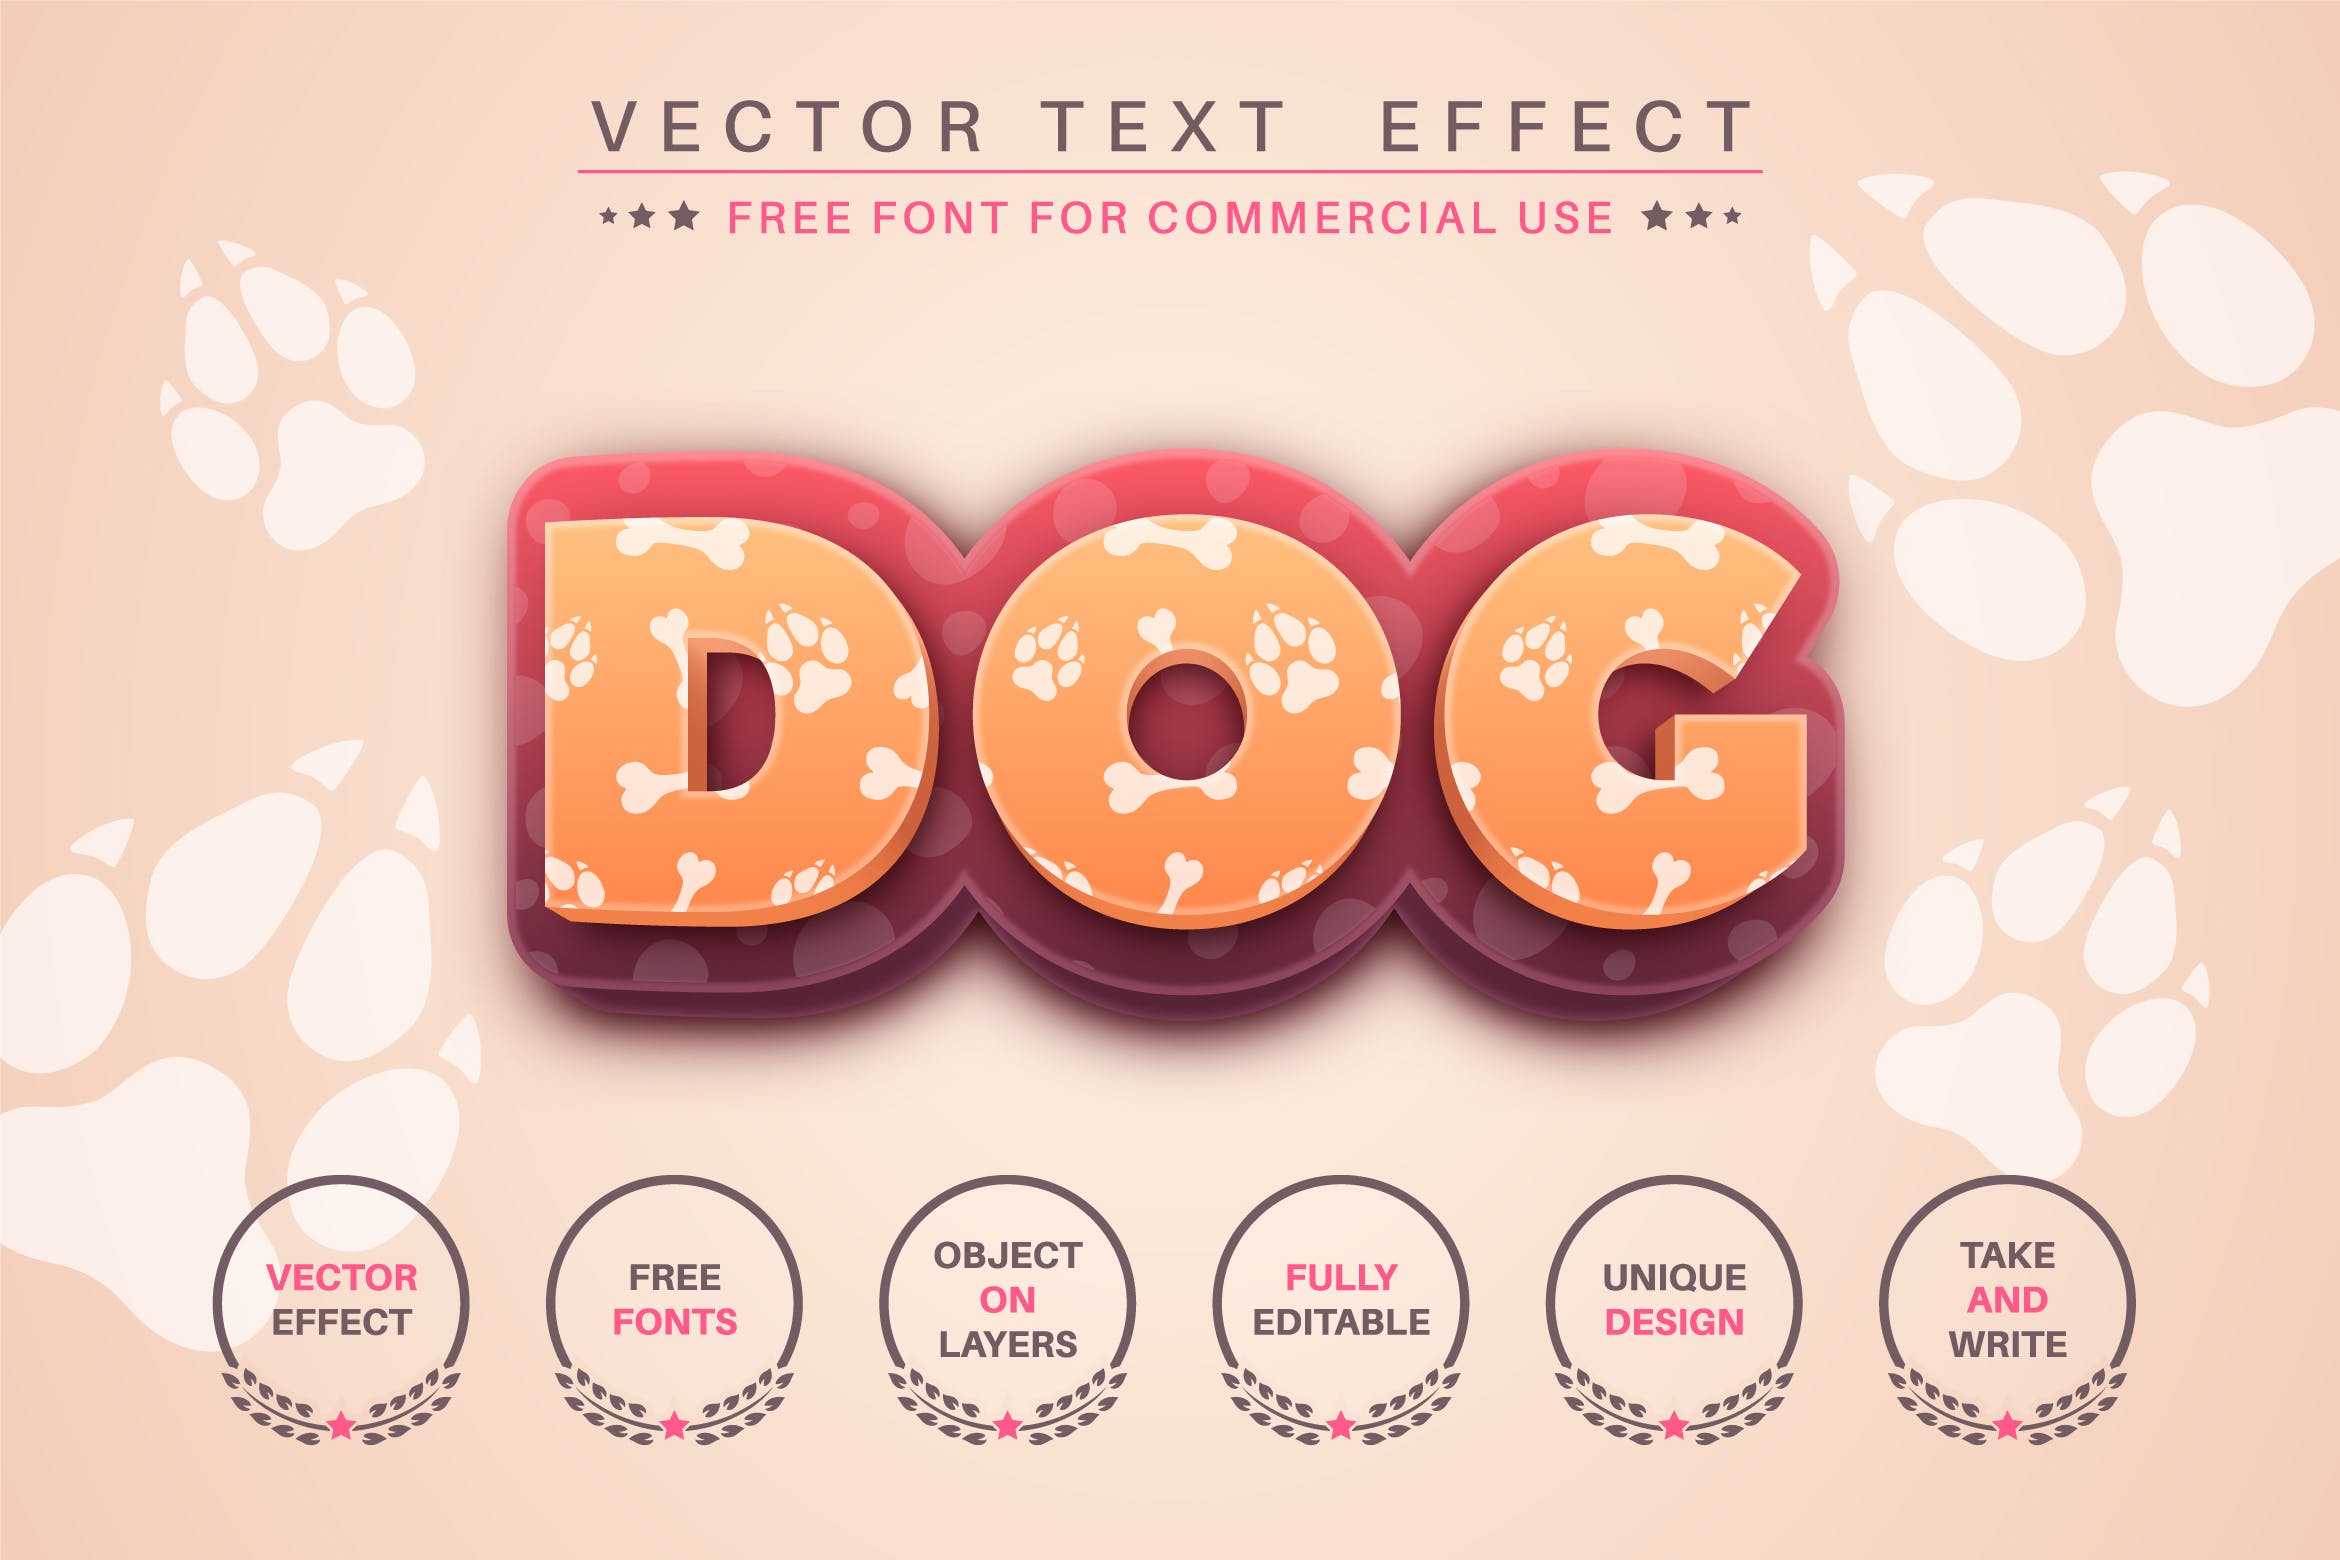 狗骨头脚印文字效果字体样式矢量素材 Big Dog – editable text effect, font style 图片素材 第1张